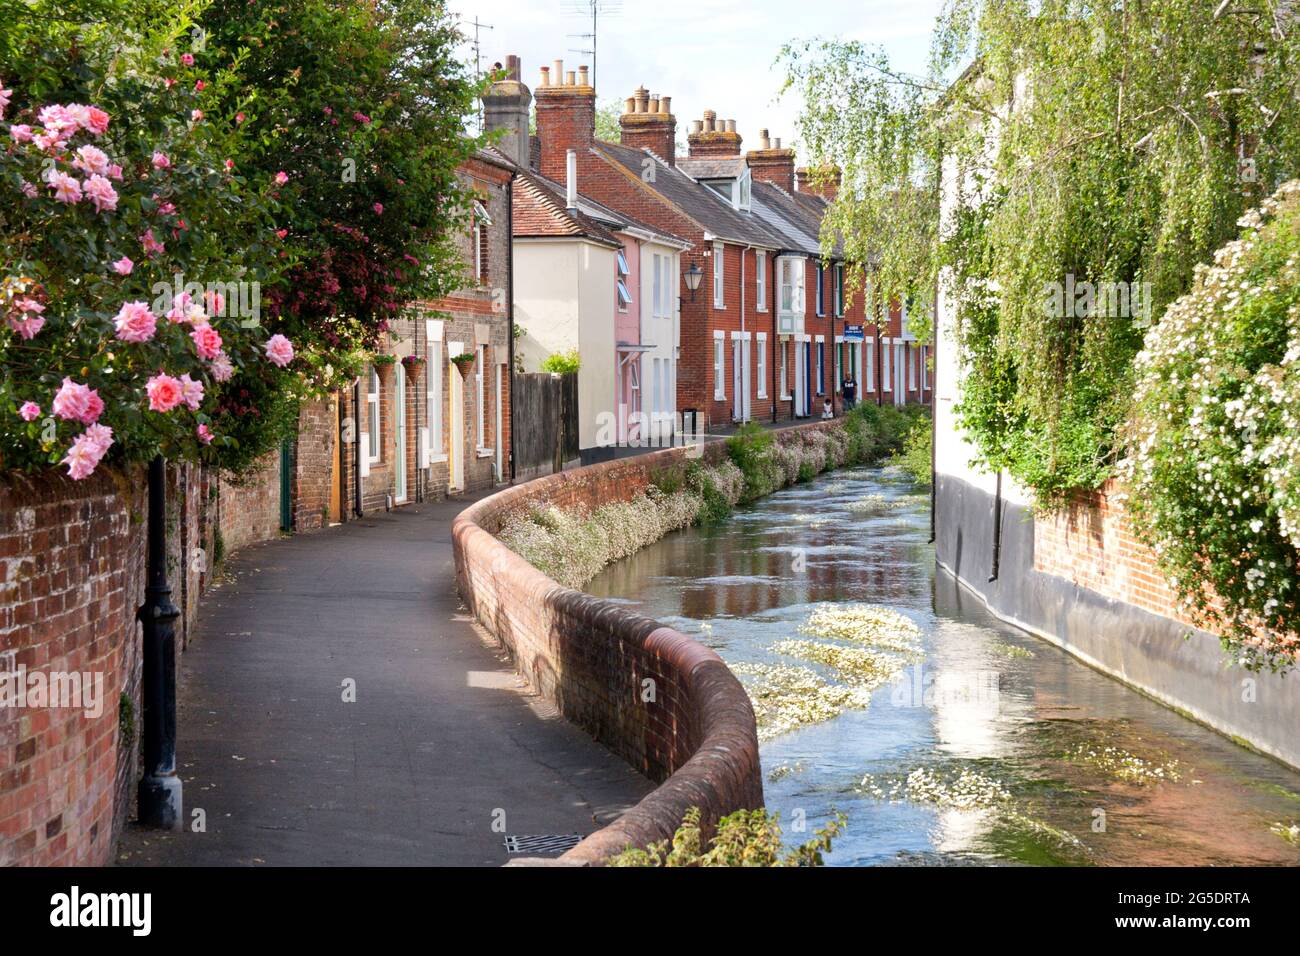 Water Lane, Salisbury, affluent de millstream de l'Avon et de Nadder avec des fleurs de pied-de-biche, (Ranunculus aquatilis aggin), Wiltshire, Angleterre Banque D'Images